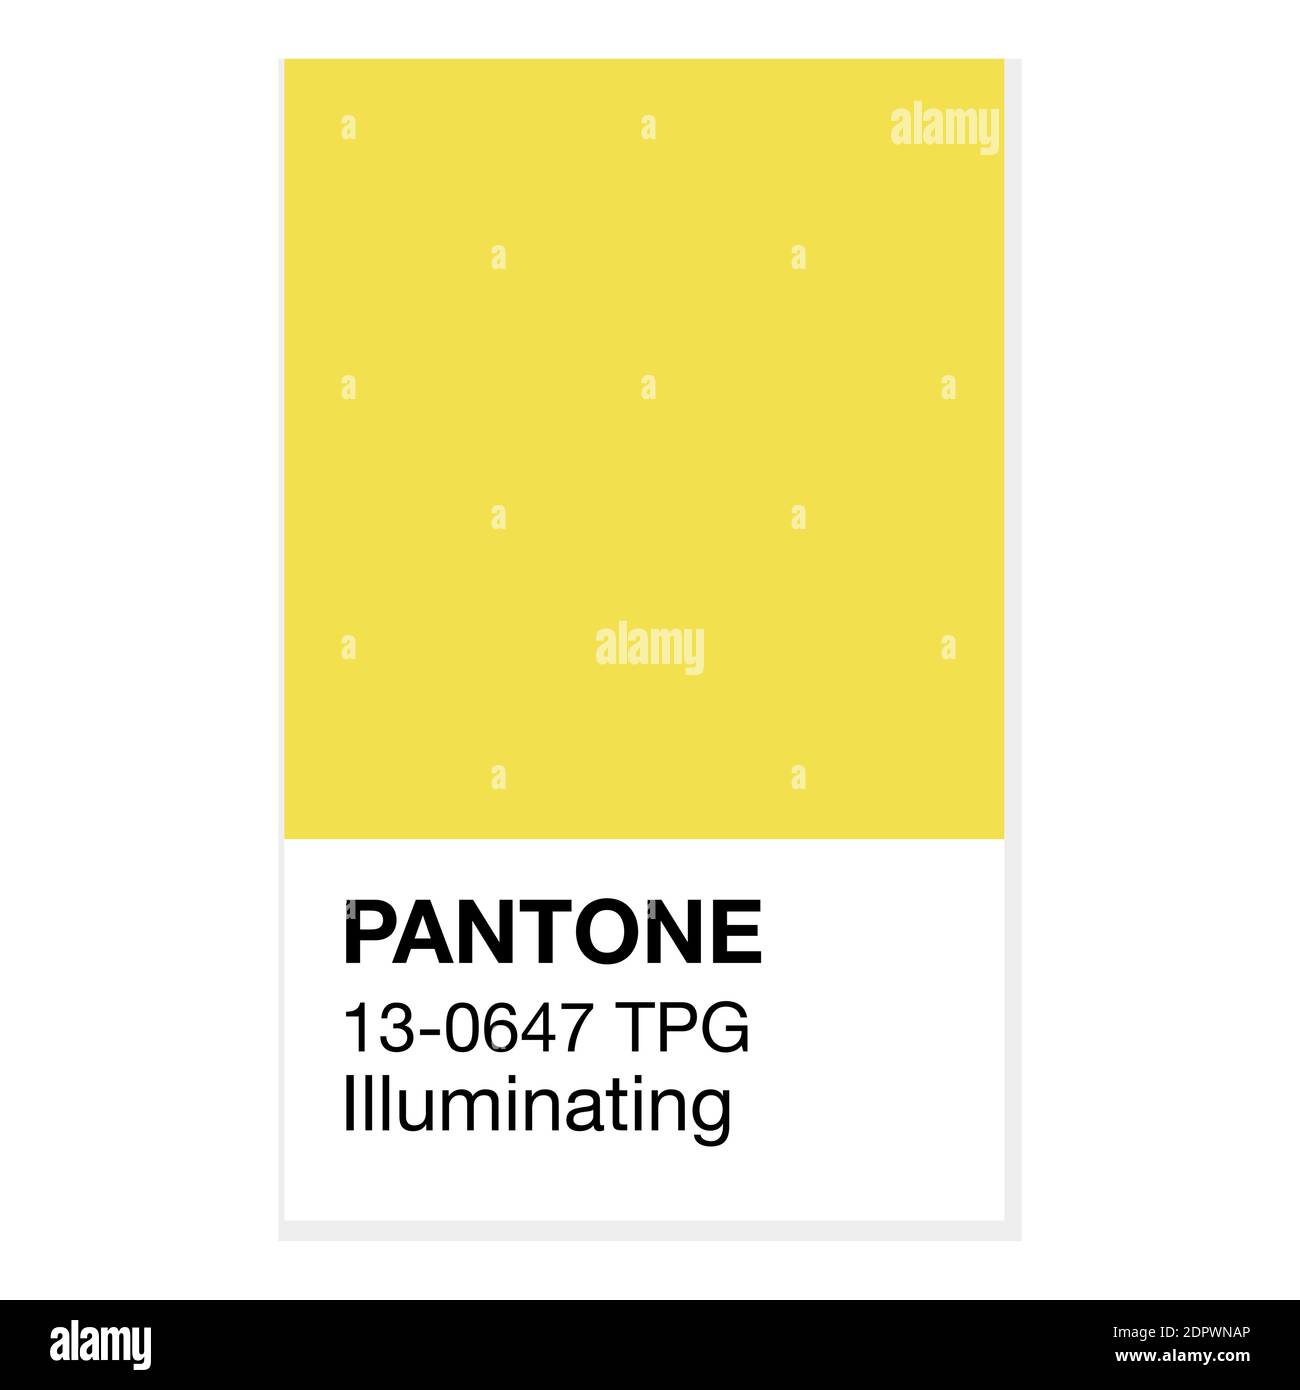 SWINDON, Royaume-Uni - 20 DÉCEMBRE 2020: Pantone Illumining Yellow Trending Color of the Year 2021. Motif de couleur, illustration vectorielle Illustration de Vecteur